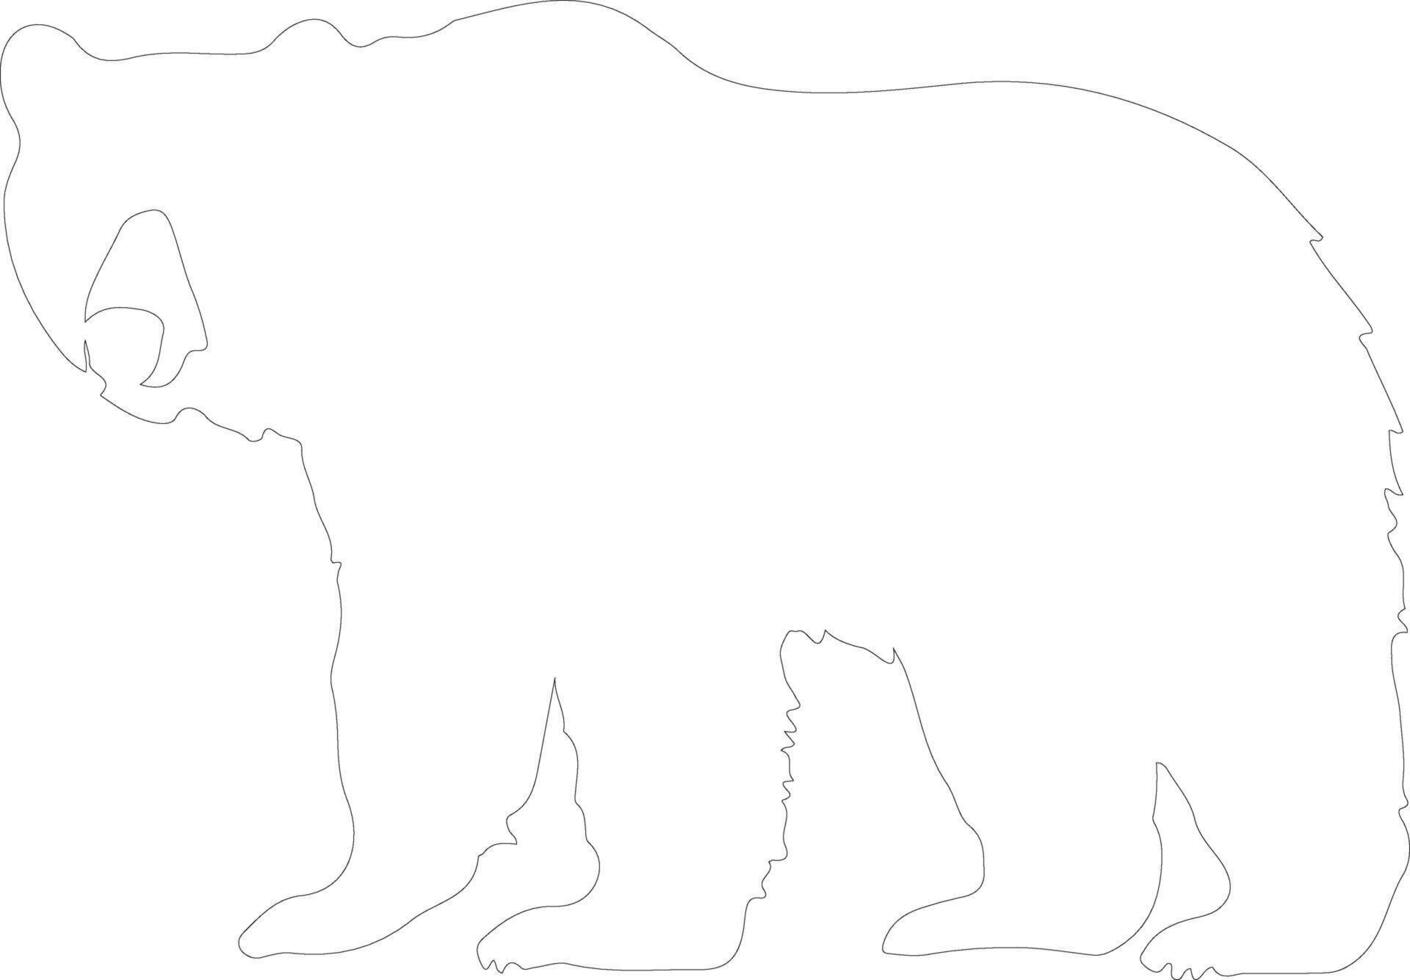 zwart beer schets silhouet vector